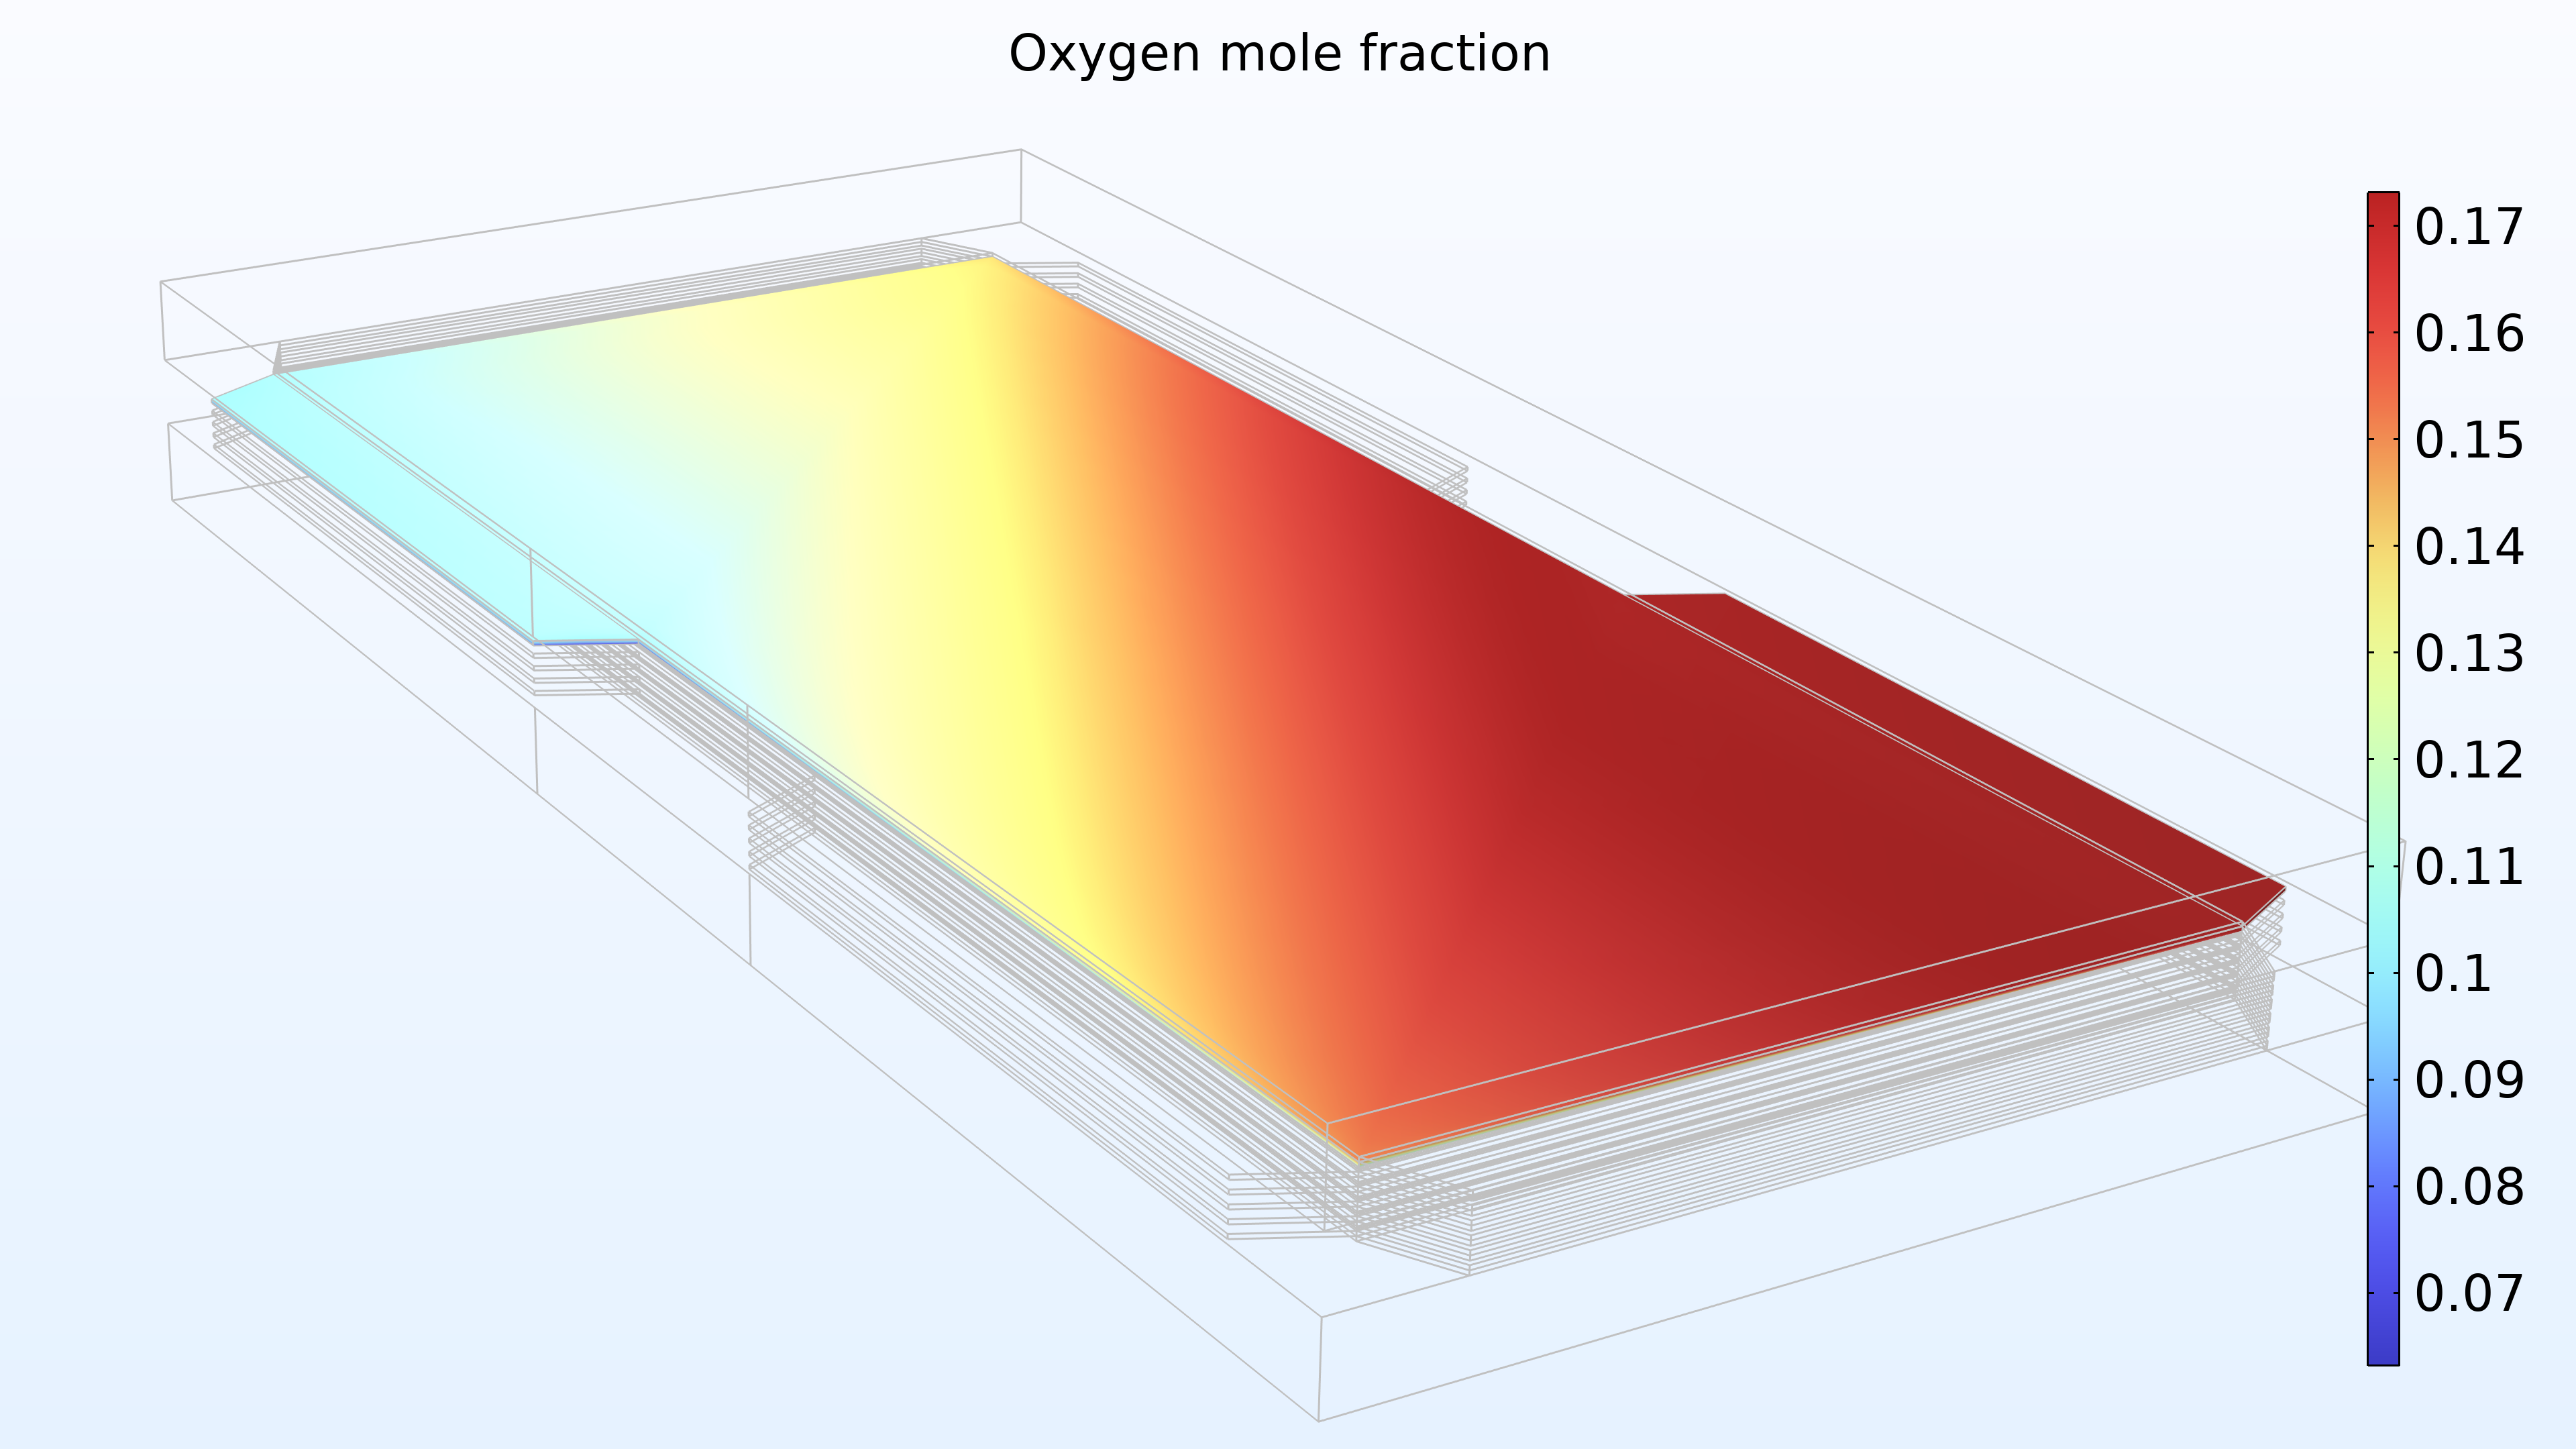 显示氧气摩尔分数与彩虹色标的图，其中模型的最左边是浅蓝色和黄色；中间是黄色、红色和橙色；最右边是深红色。